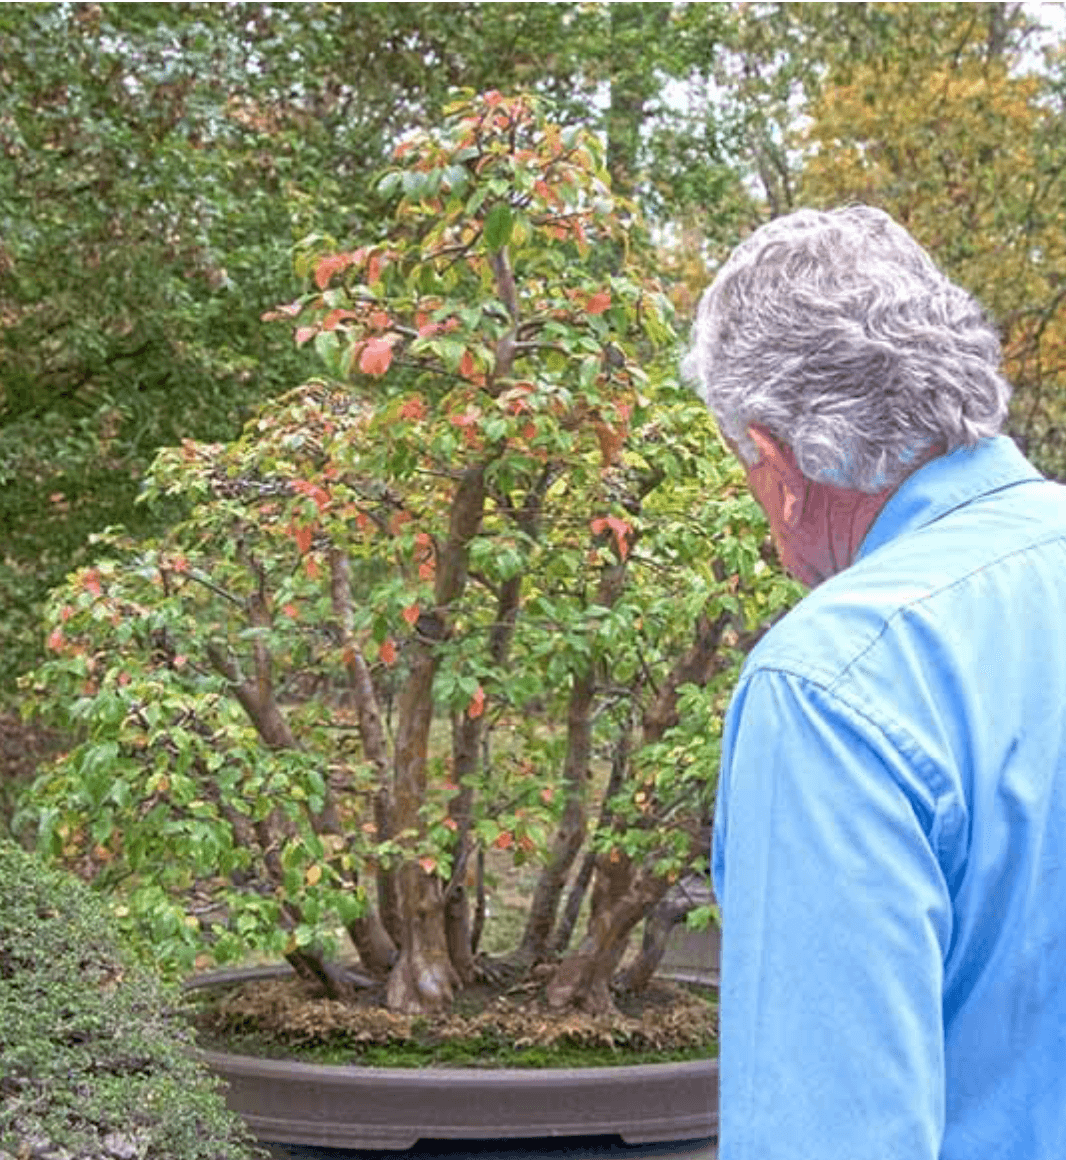 Warren Hill và Tác phẩm Cây Chinese quinces (Pseudocydonia sinensis) trồng theo phong cách rừng. Ảnh: Walter Pall